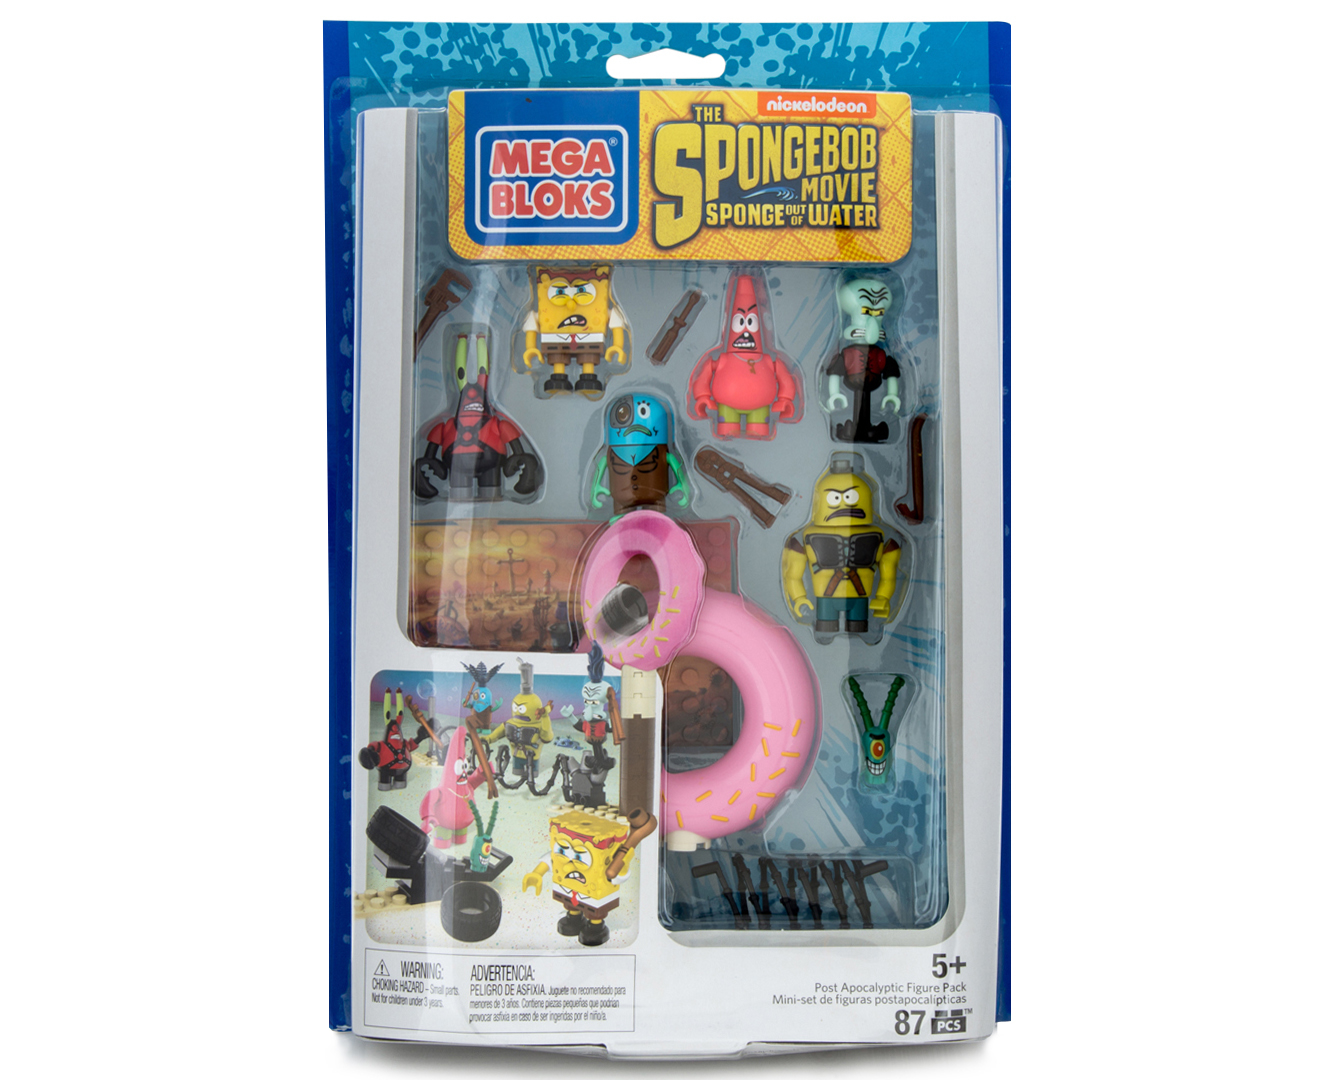 Mega Bloks SpongeBob Movie Post Apocalyptic Figure Pack Playset